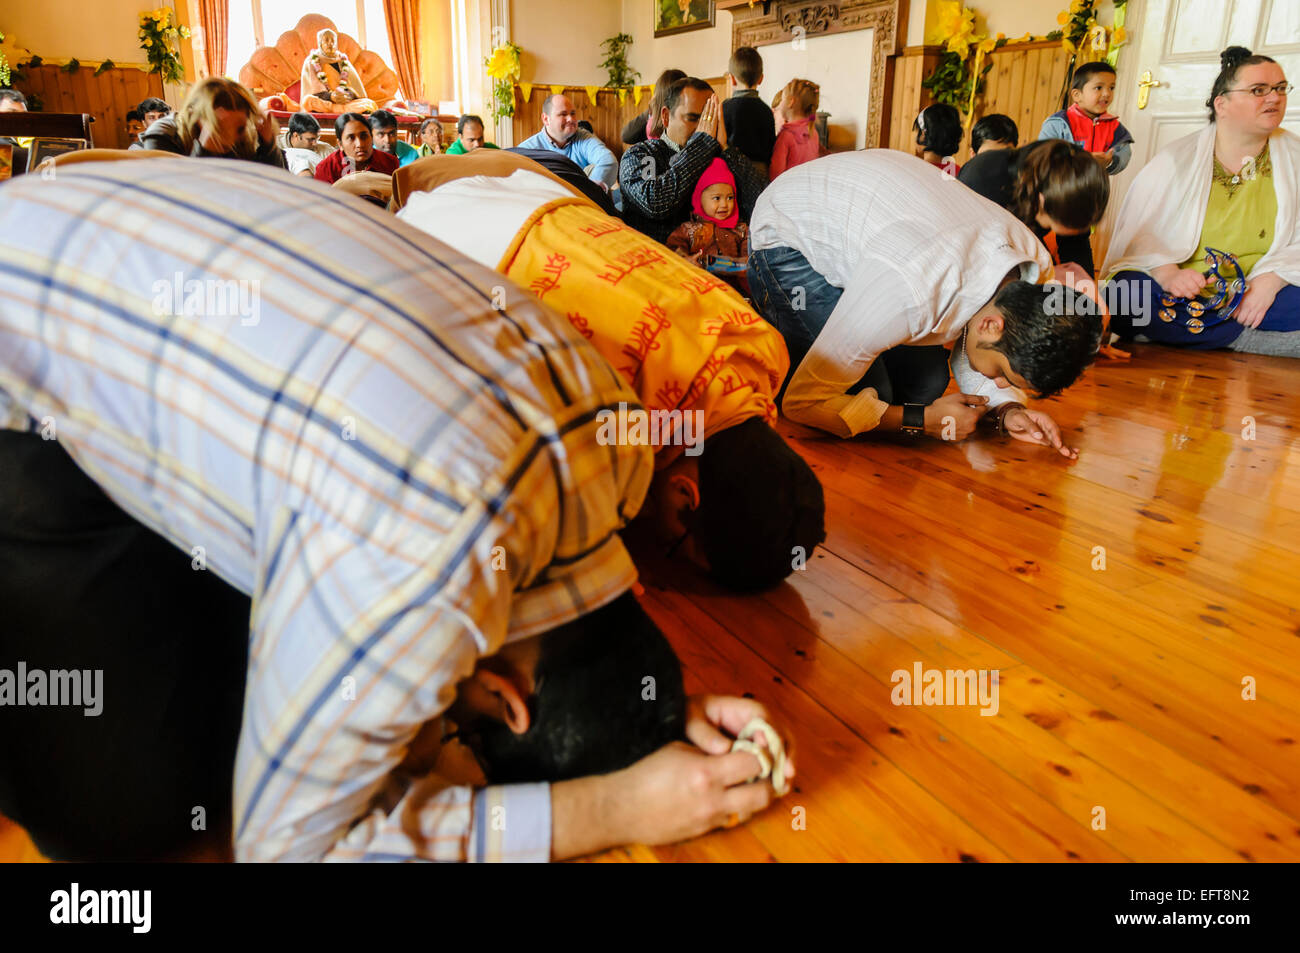 Devotees pray at a Hare Krishna ceremony Stock Photo